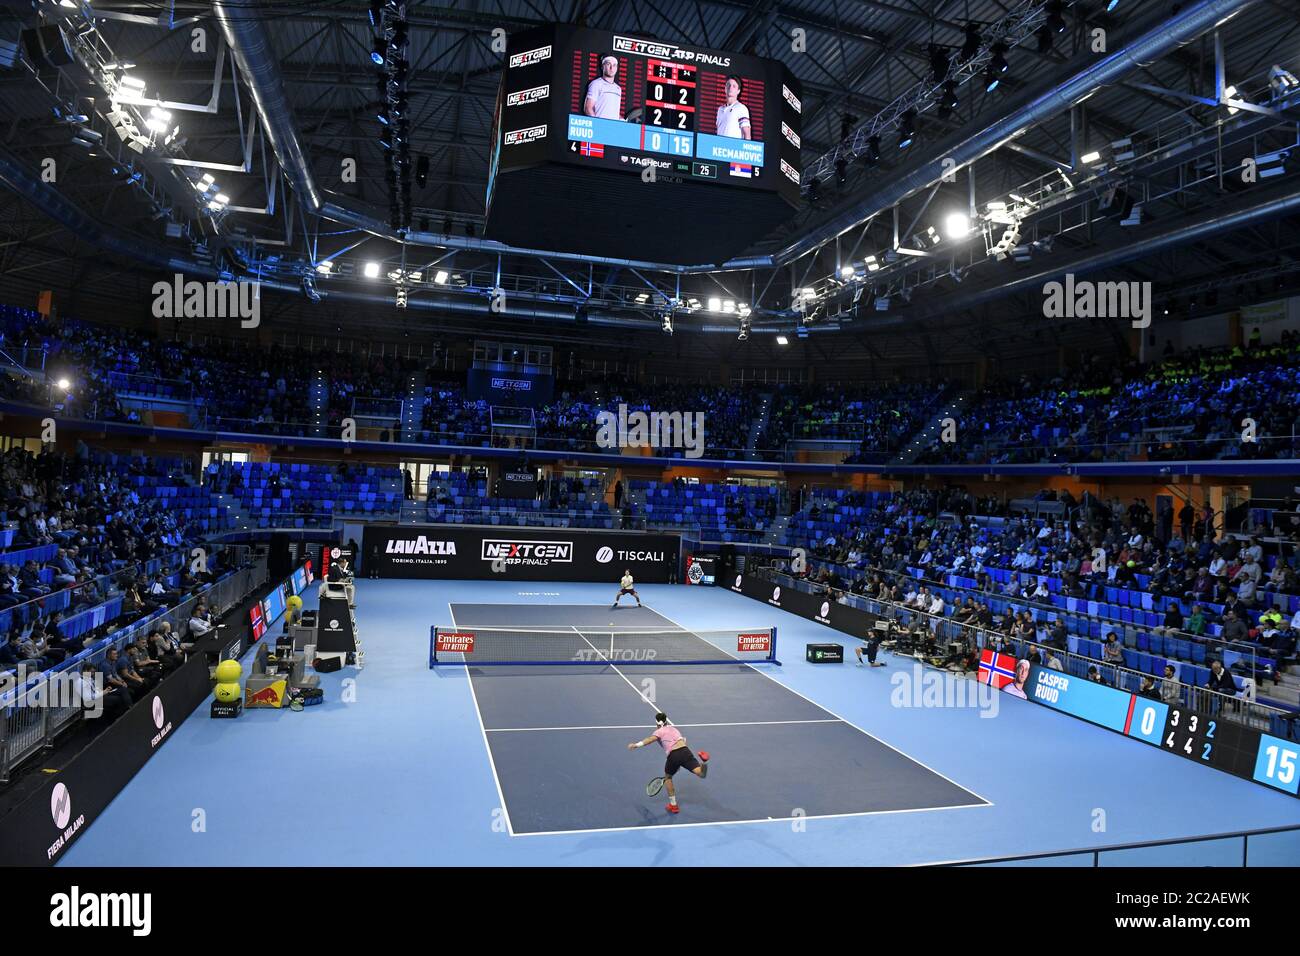 Court de tennis intérieur, lors d'un match de tennis des finales ATP de la prochaine génération, à Milan. Banque D'Images